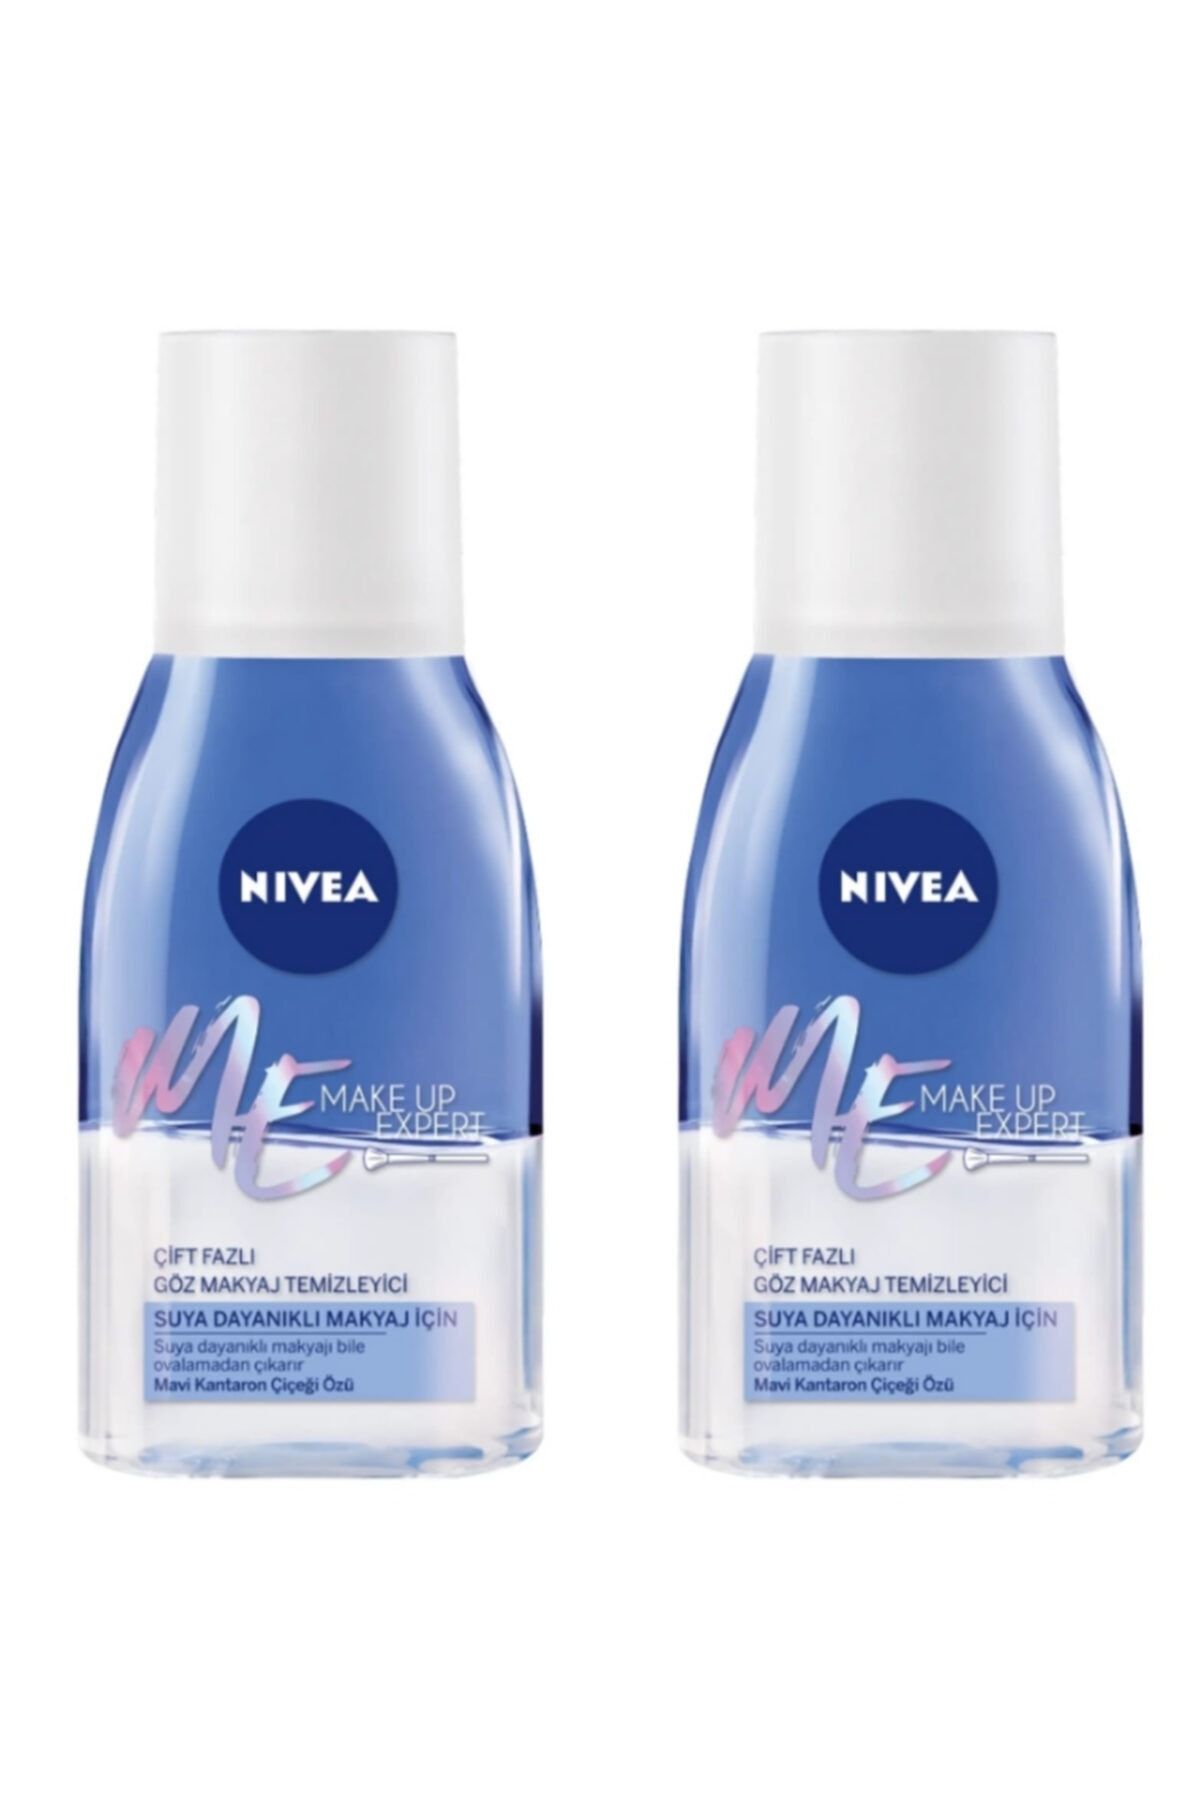 NIVEA Me Make Up Expert Çift Fazlı Makyaj Temizleyici Suya Dayanıklı Makyaj Için 2'li